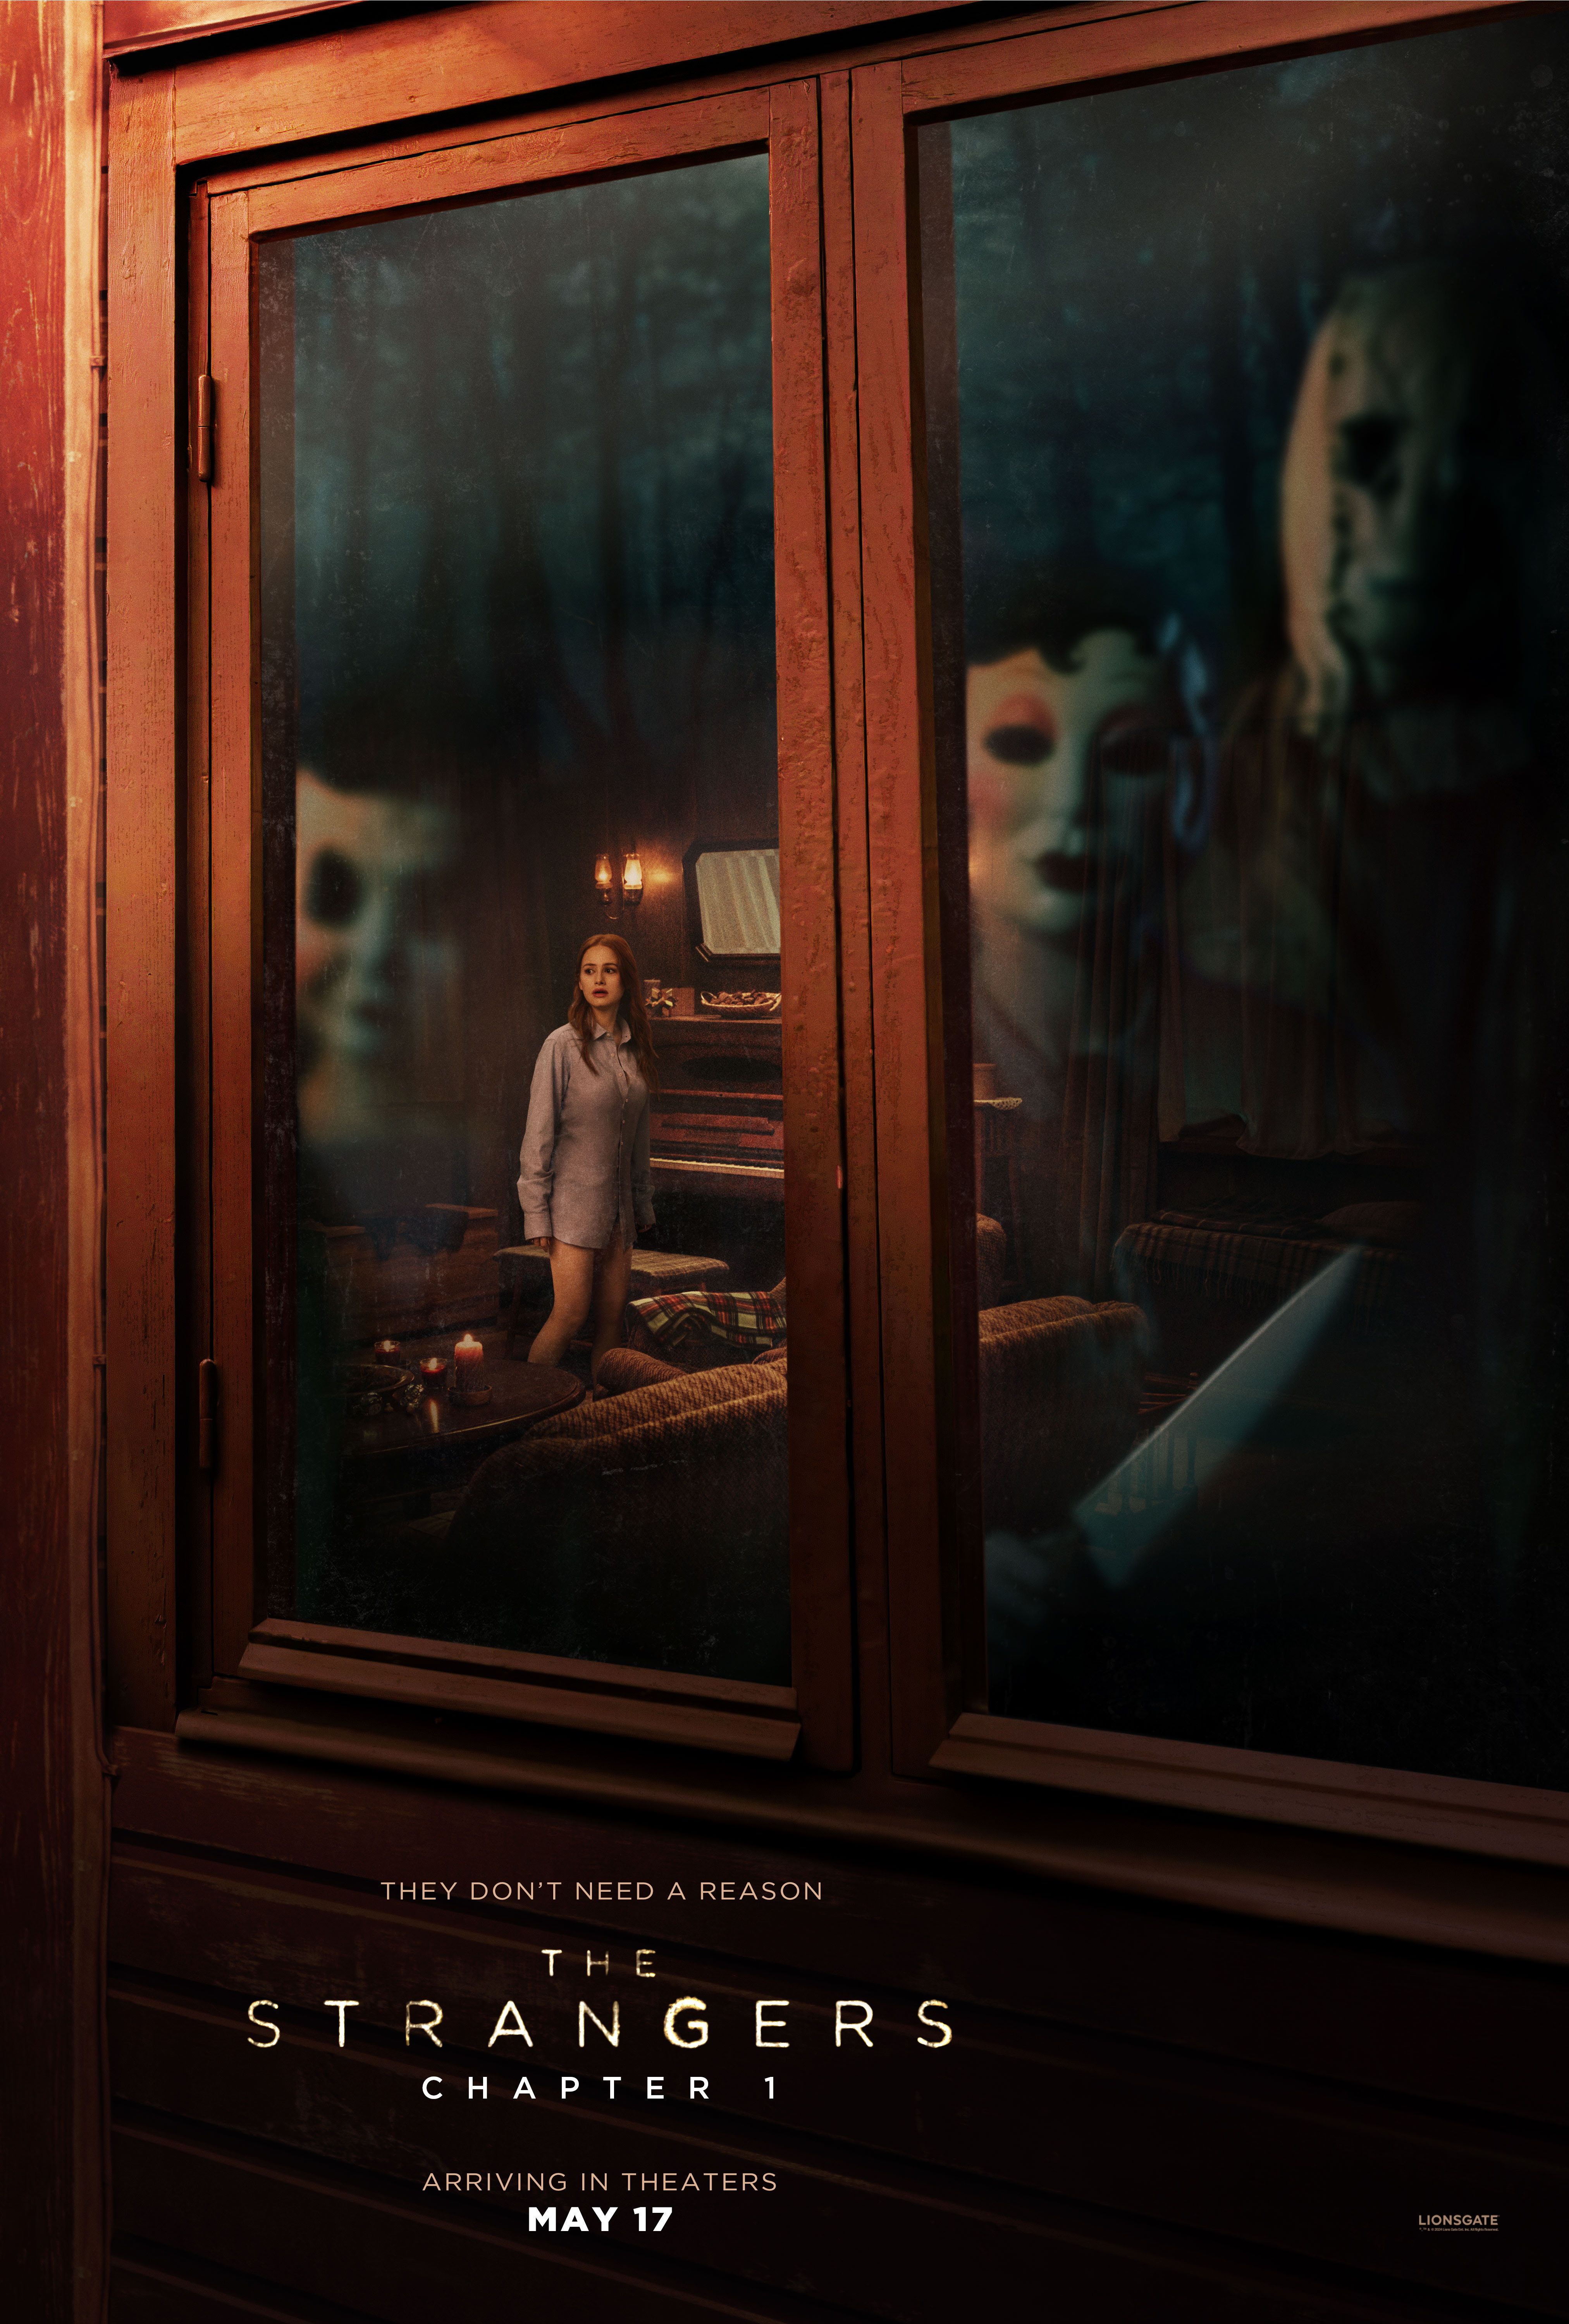 Pôster de The Strangers Capítulo 1 mostrando três figuras mascaradas olhando por uma janela